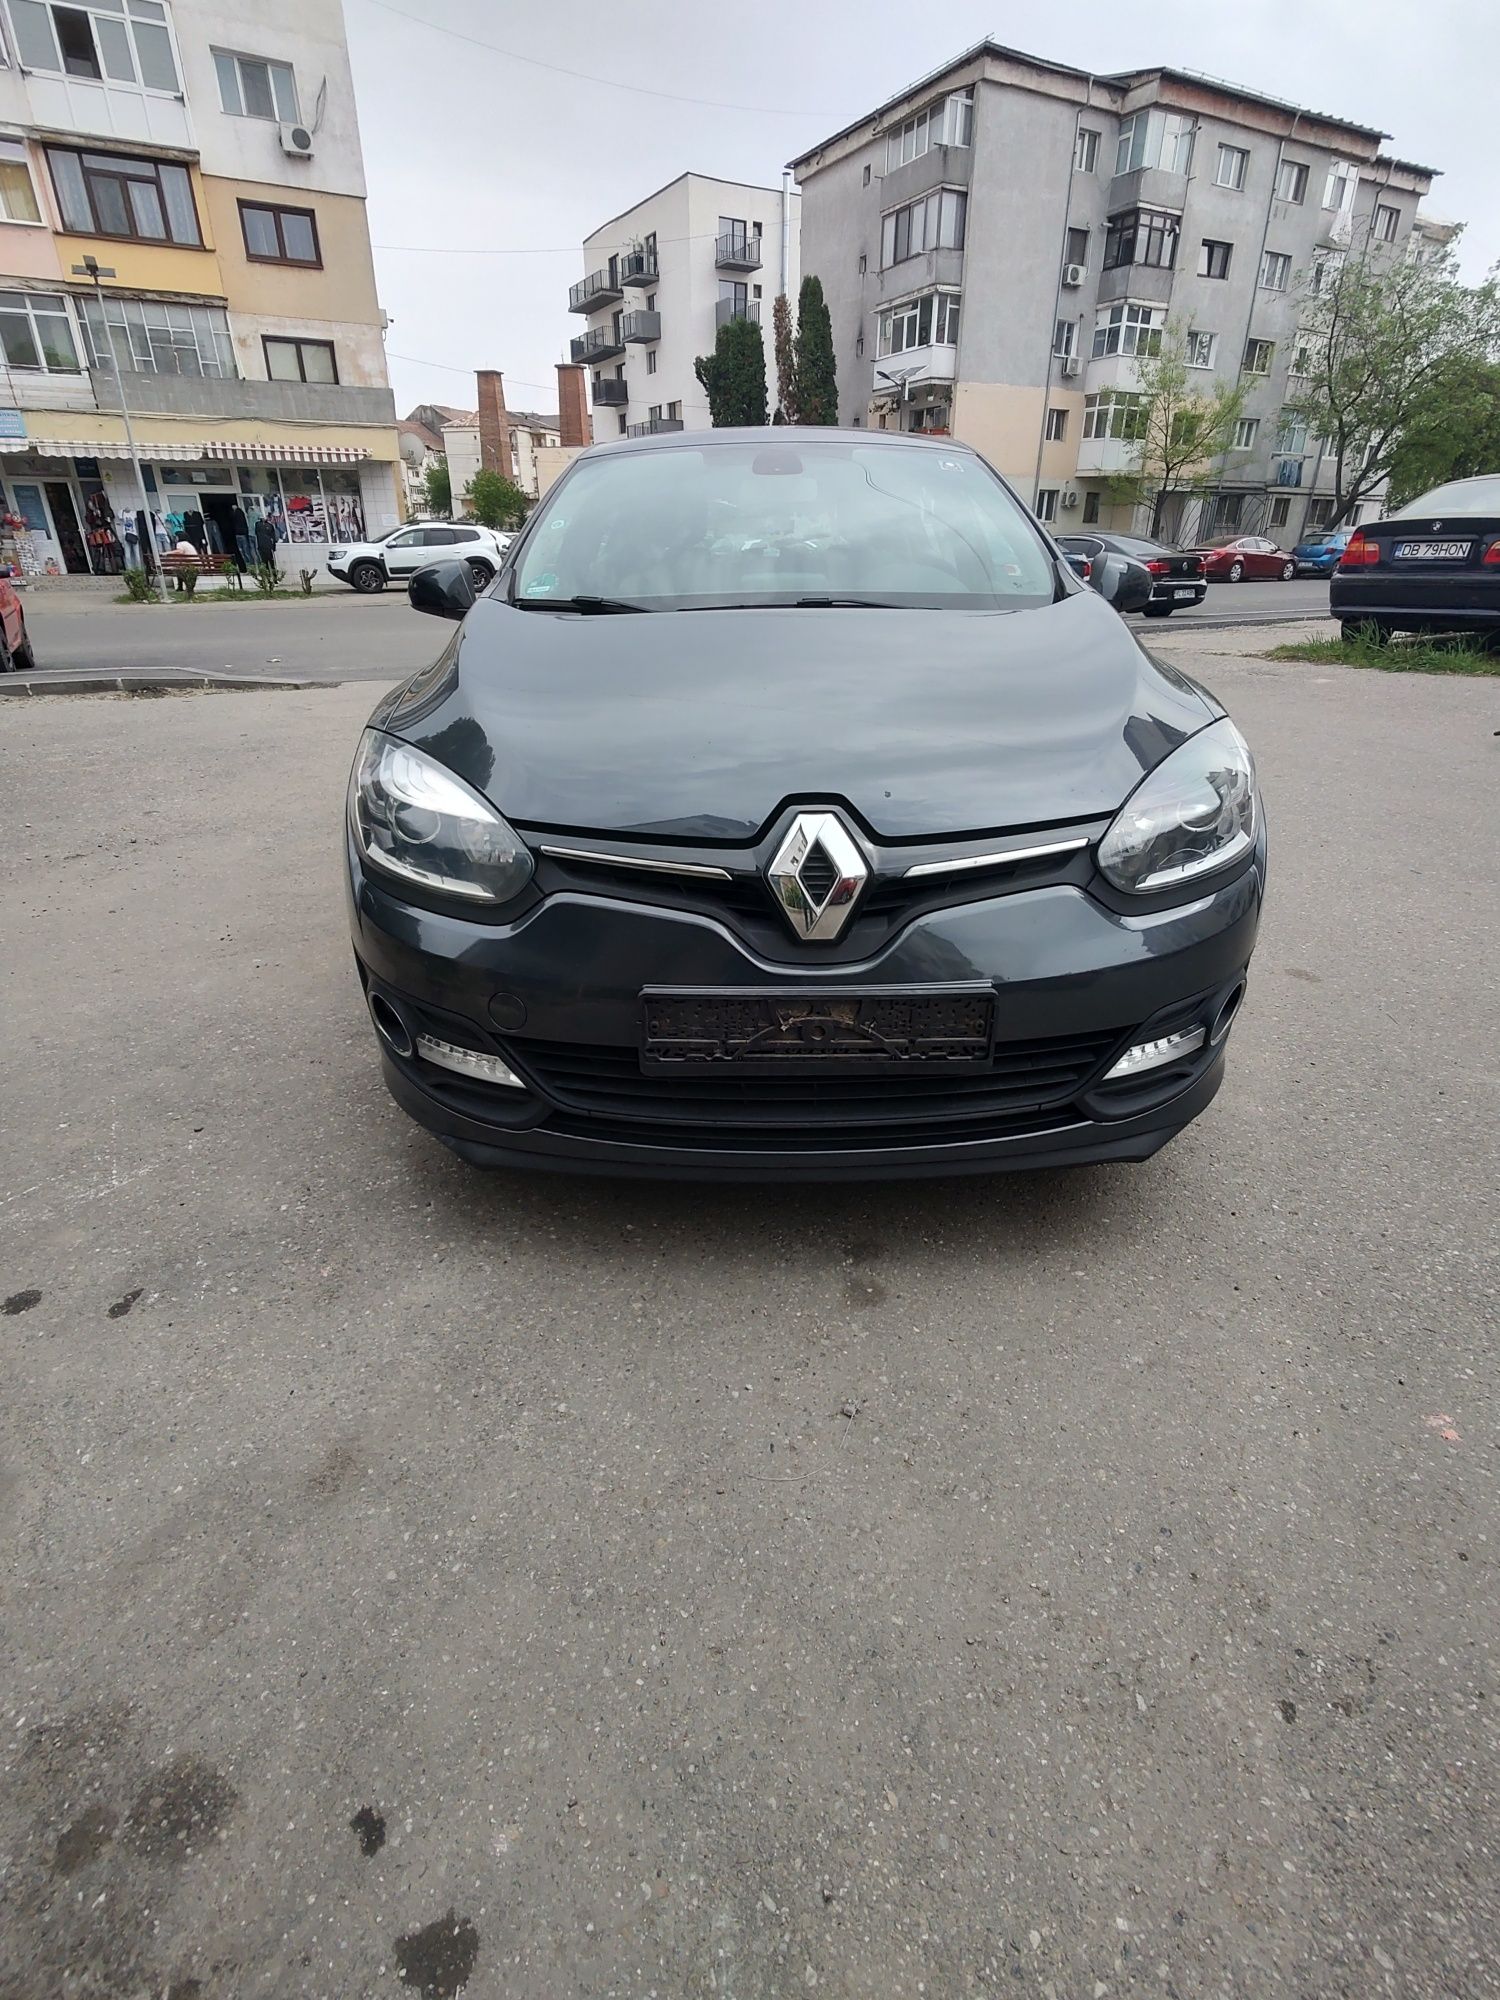 Renault Megane Facelift